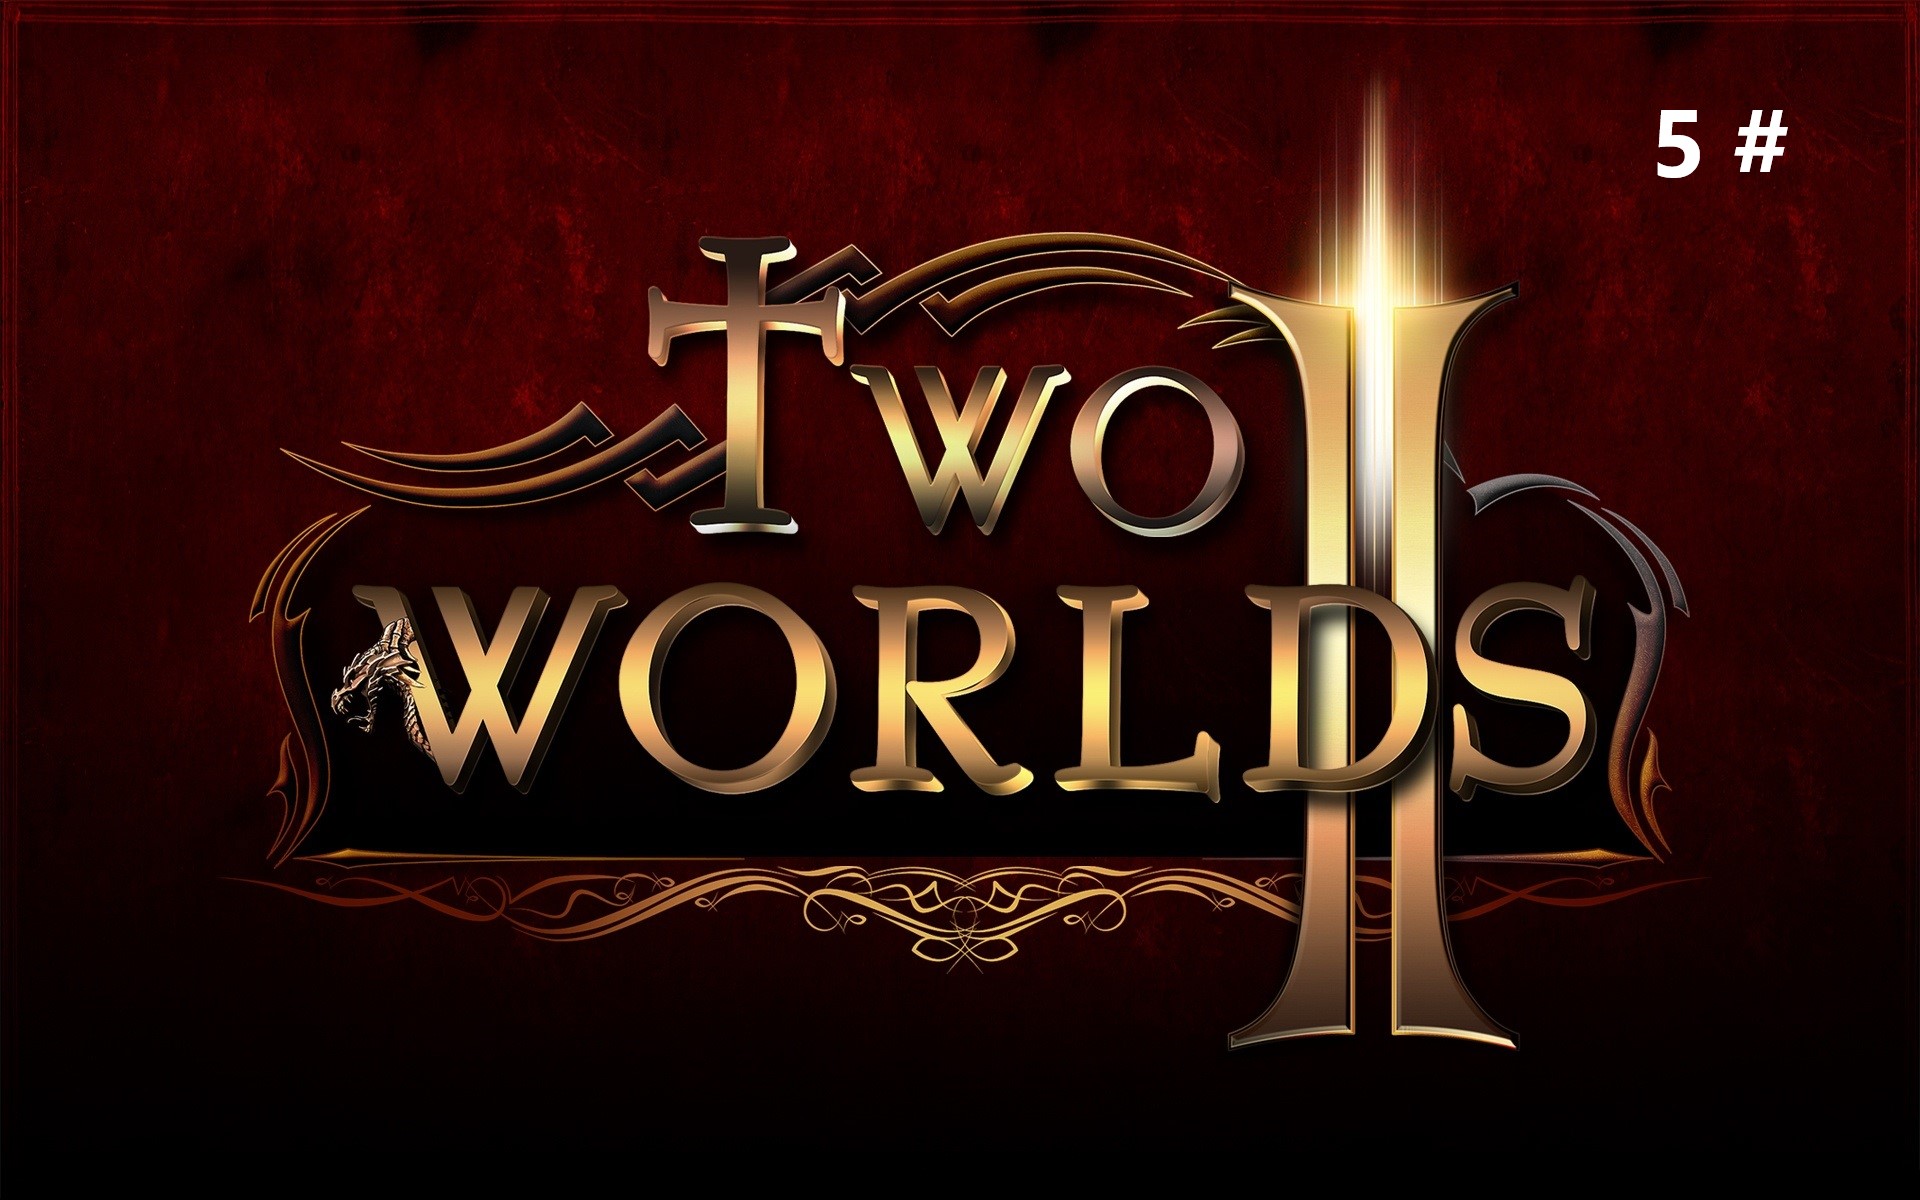 Прохождение Two Worlds II 5 # (Гонка конокрадов и спасение от засухи)